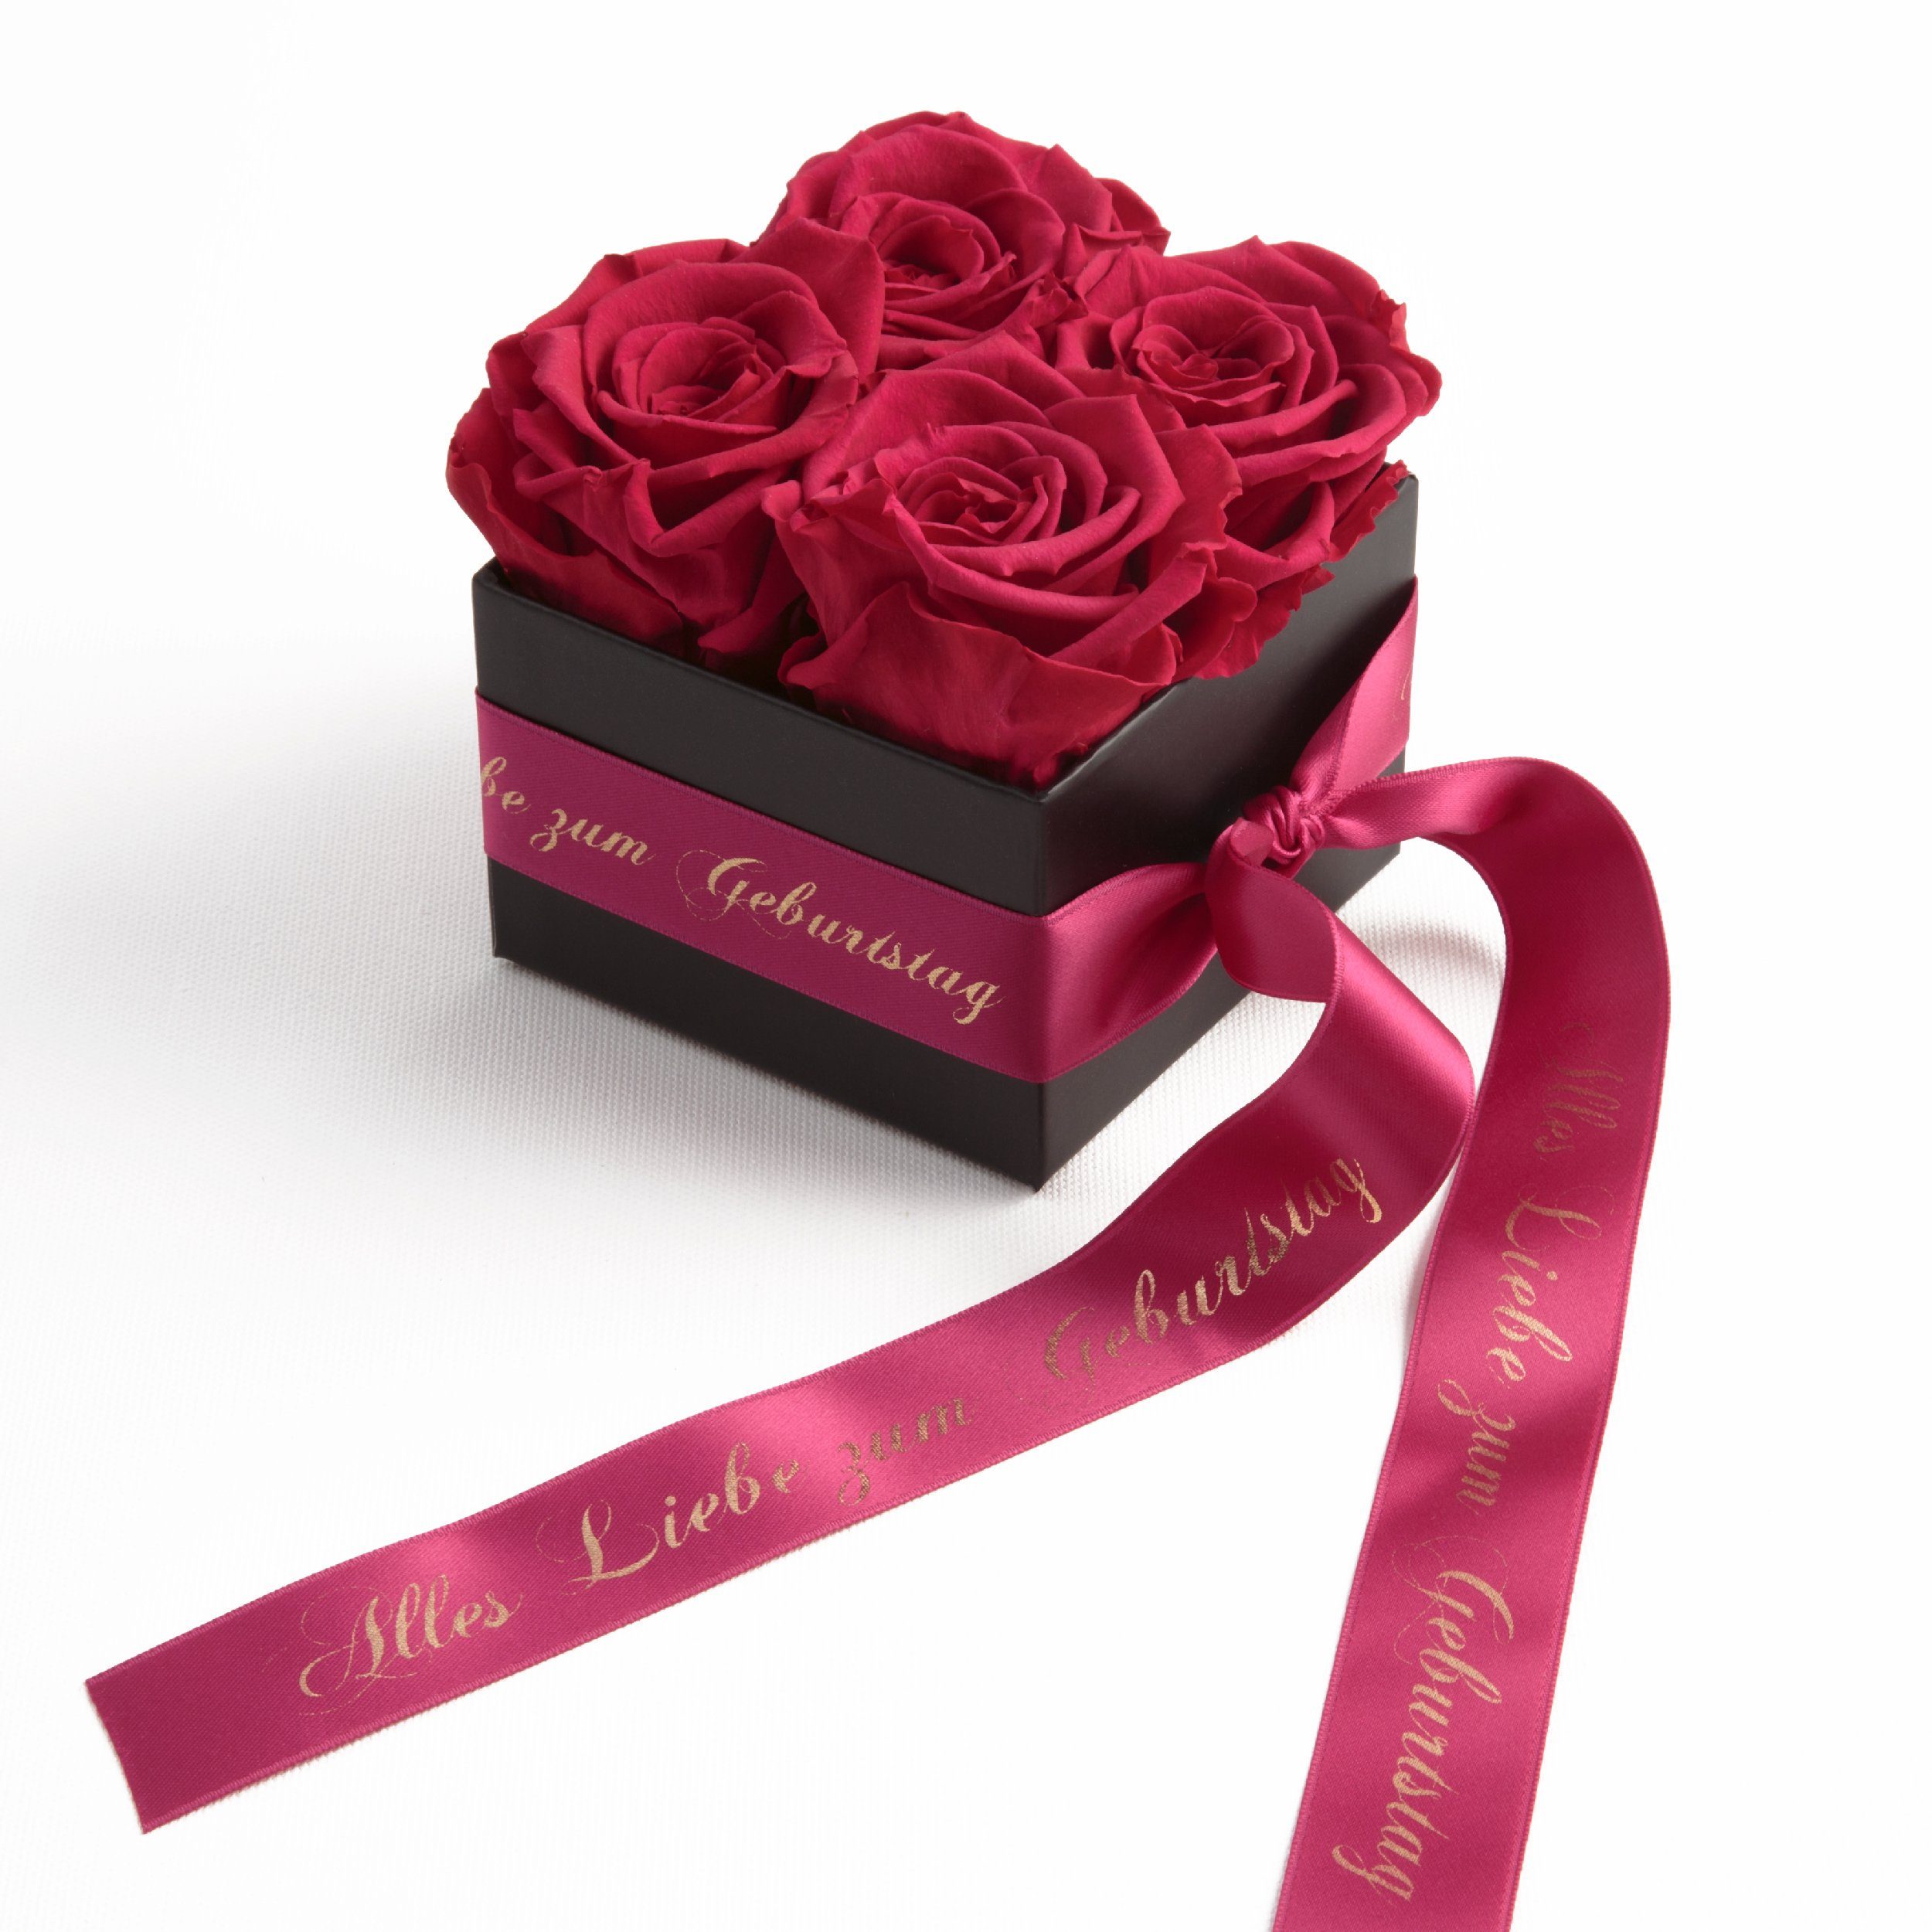 ROSEMARIE SCHULZ Heidelberg Dekoobjekt Rosenbox echte Rosen Alles Liebe zum Geburtstag Geschenk für Frauen (1 St), Echte konservierte Rosen Pink